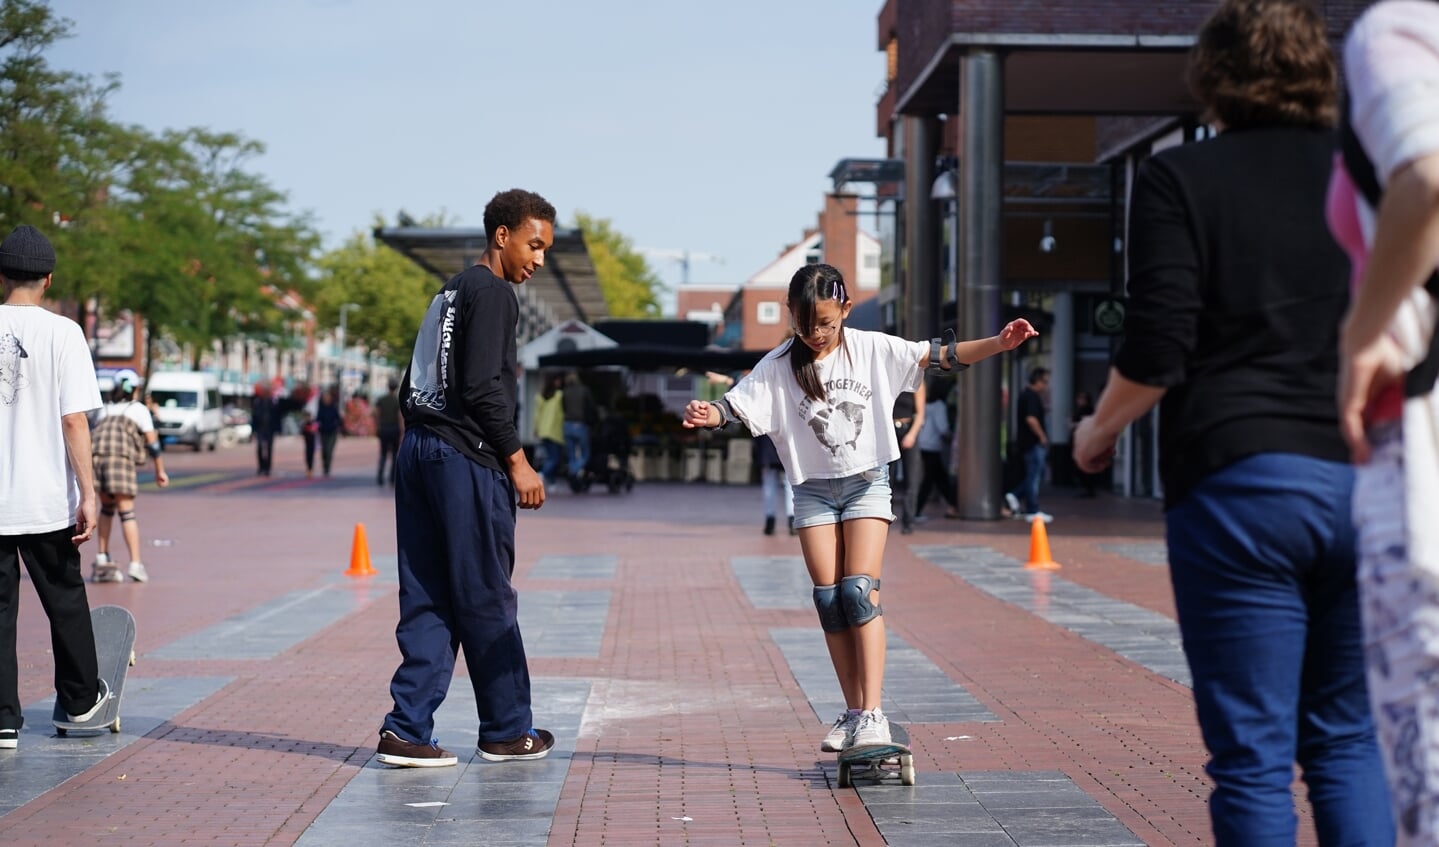 Ook werd er skateboardles gegeven op het plein. 